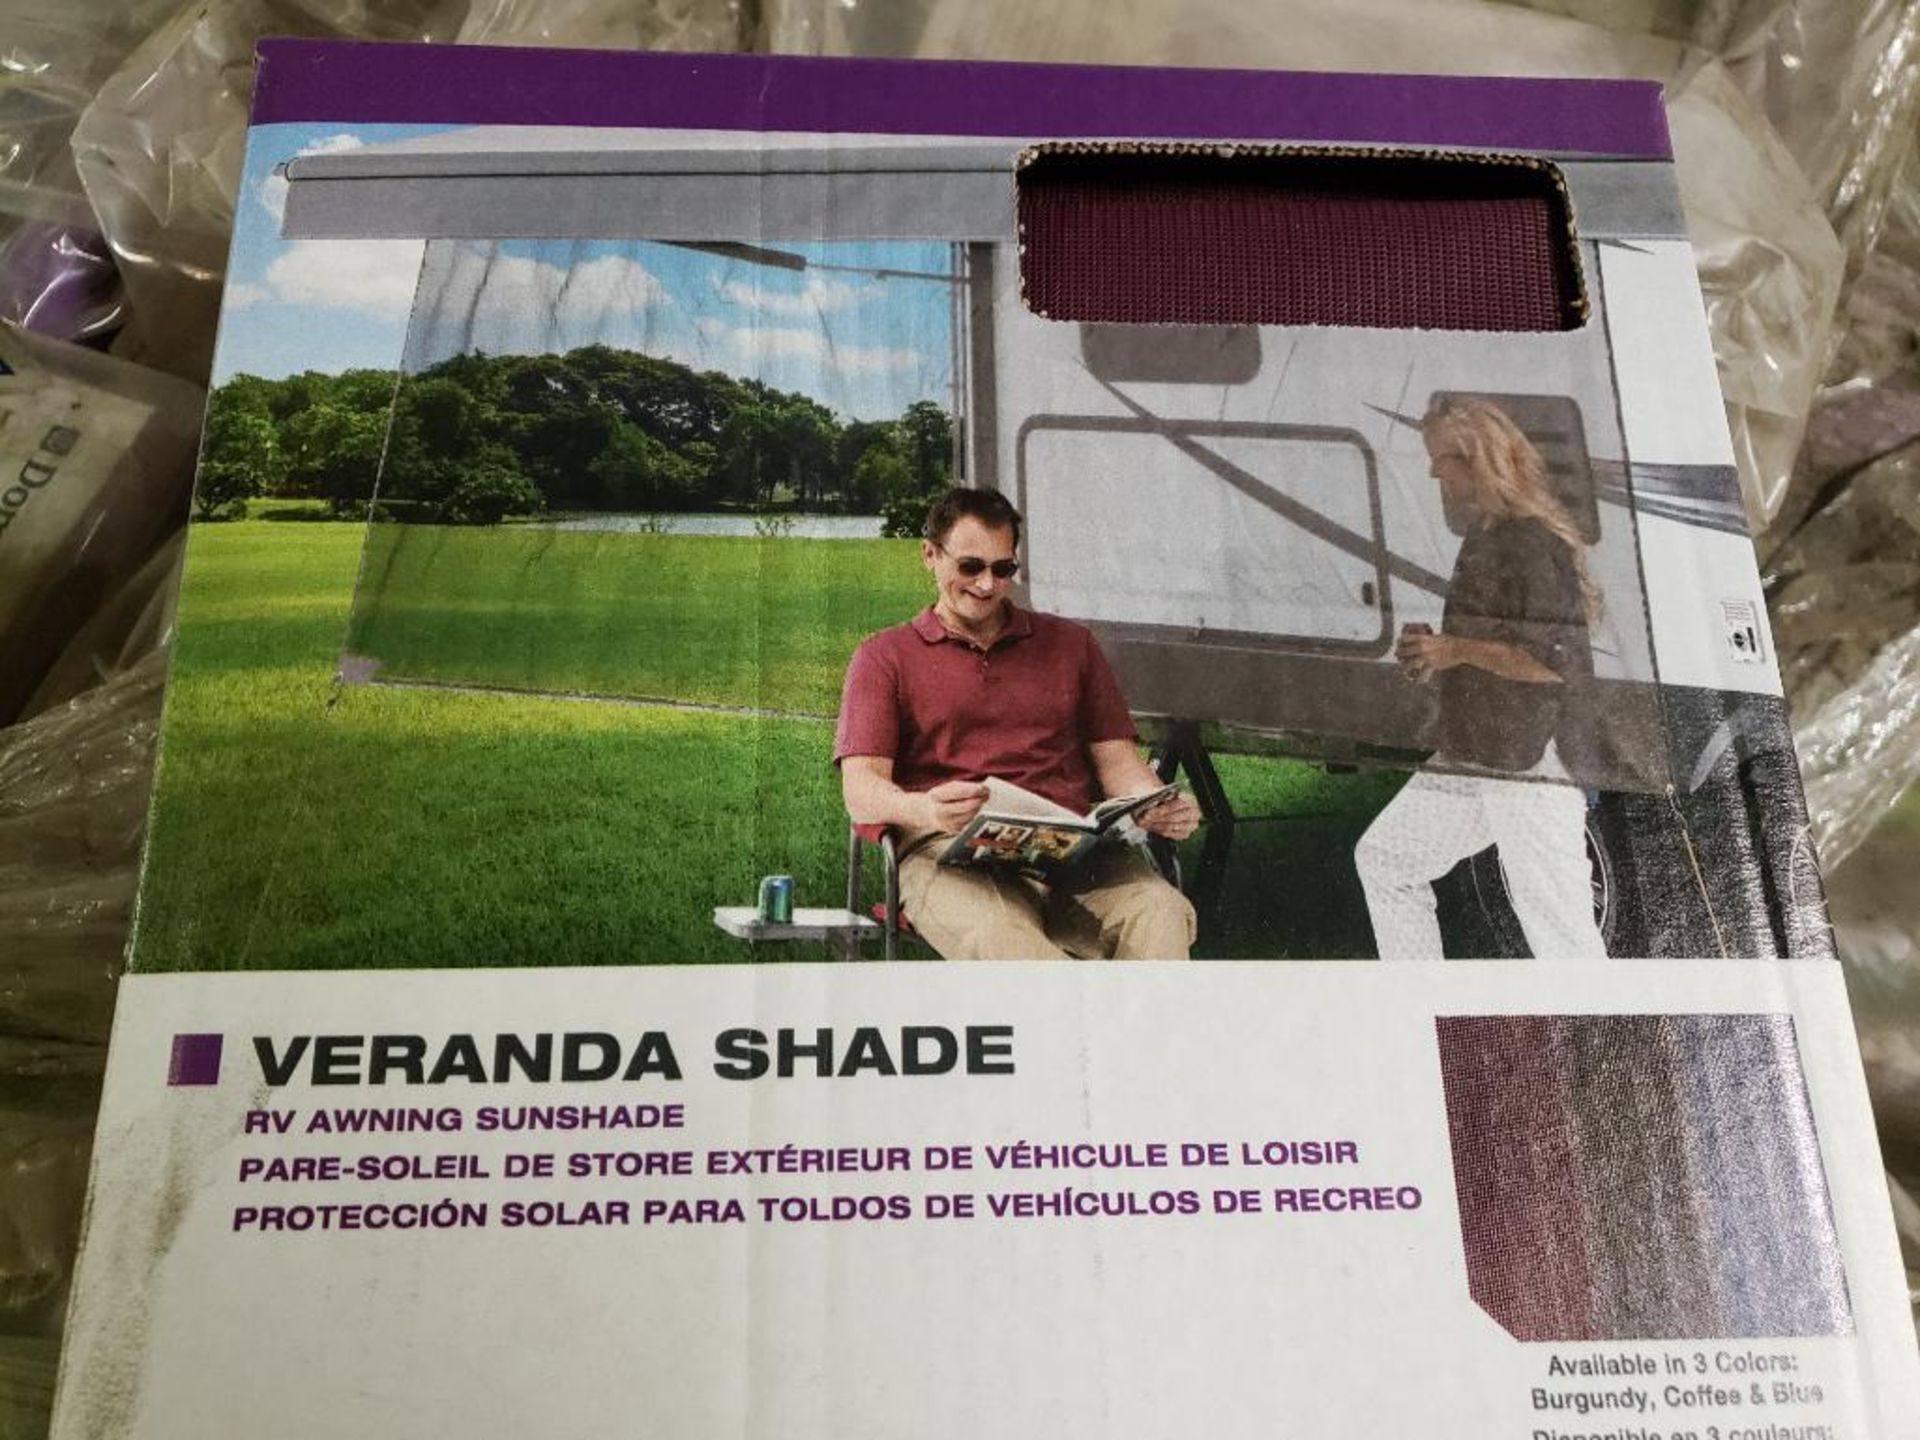 Qty 40 - RV awning veranda shade. Patty O-Shade 15'. Part number 930015.G10. - Image 4 of 5